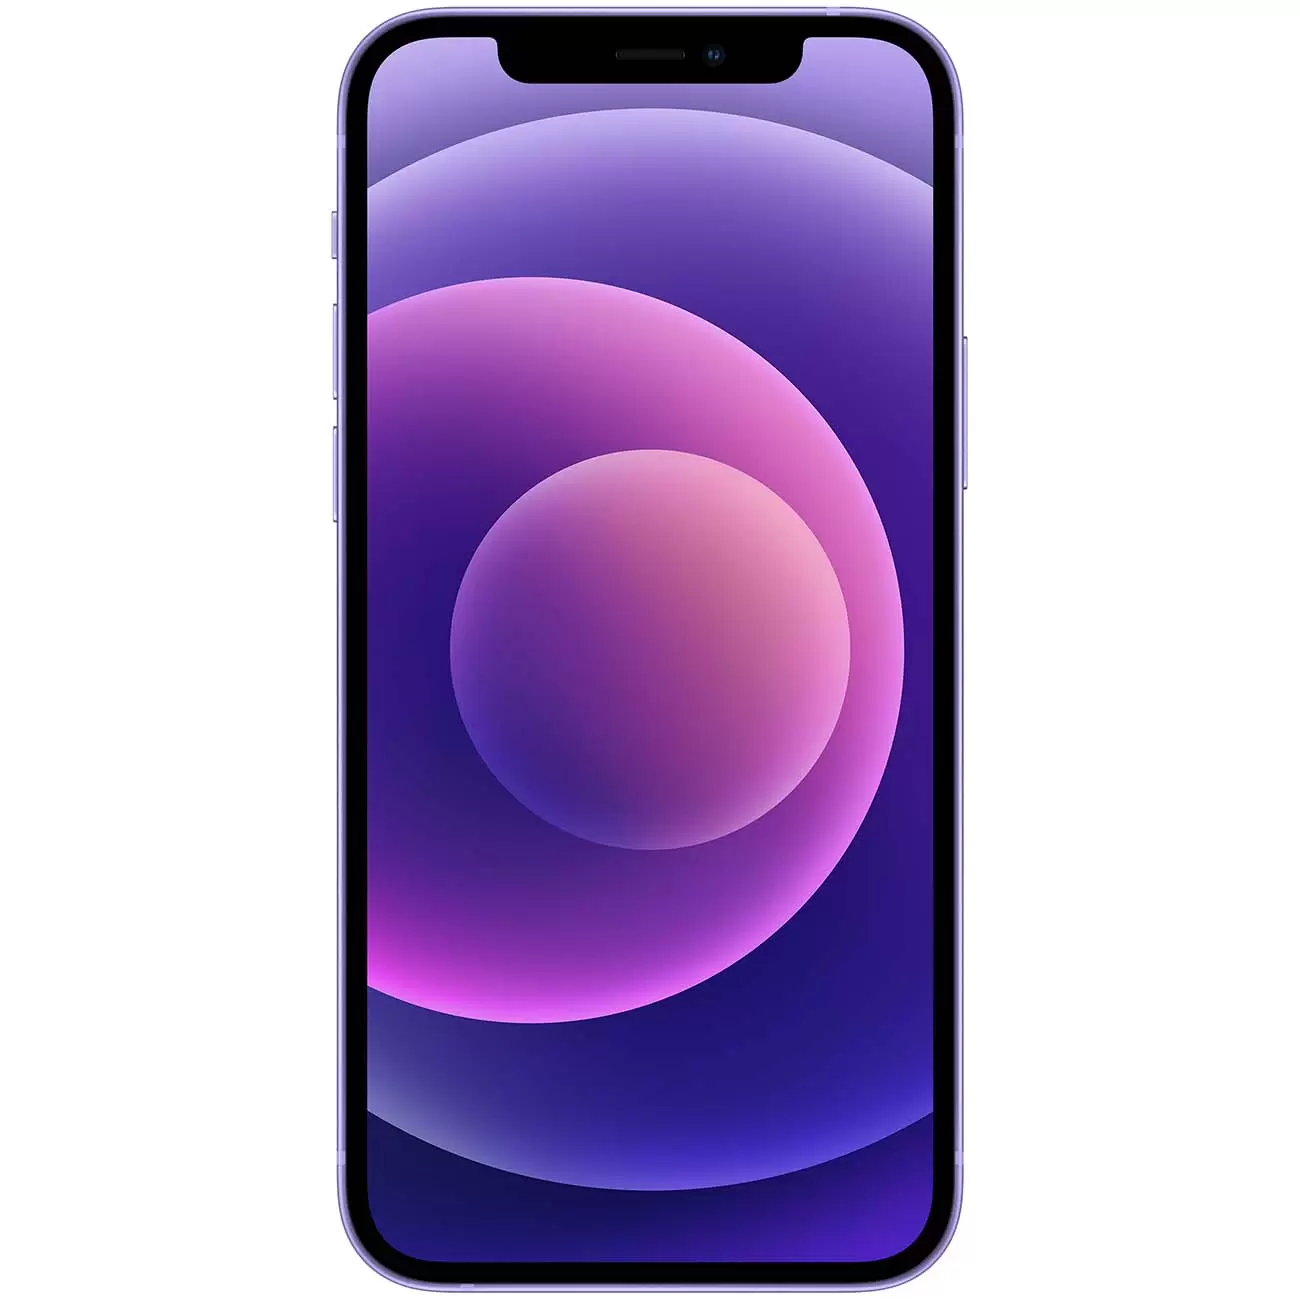 Купить смартфон apple iphone 12 128gb purple Apple iPhone 12 в официальном магазине Apple, Samsung, Xiaomi. iPixel.ru Купить, заказ, кредит, рассрочка, отзывы,  характеристики, цена,  фотографии, в подарок.